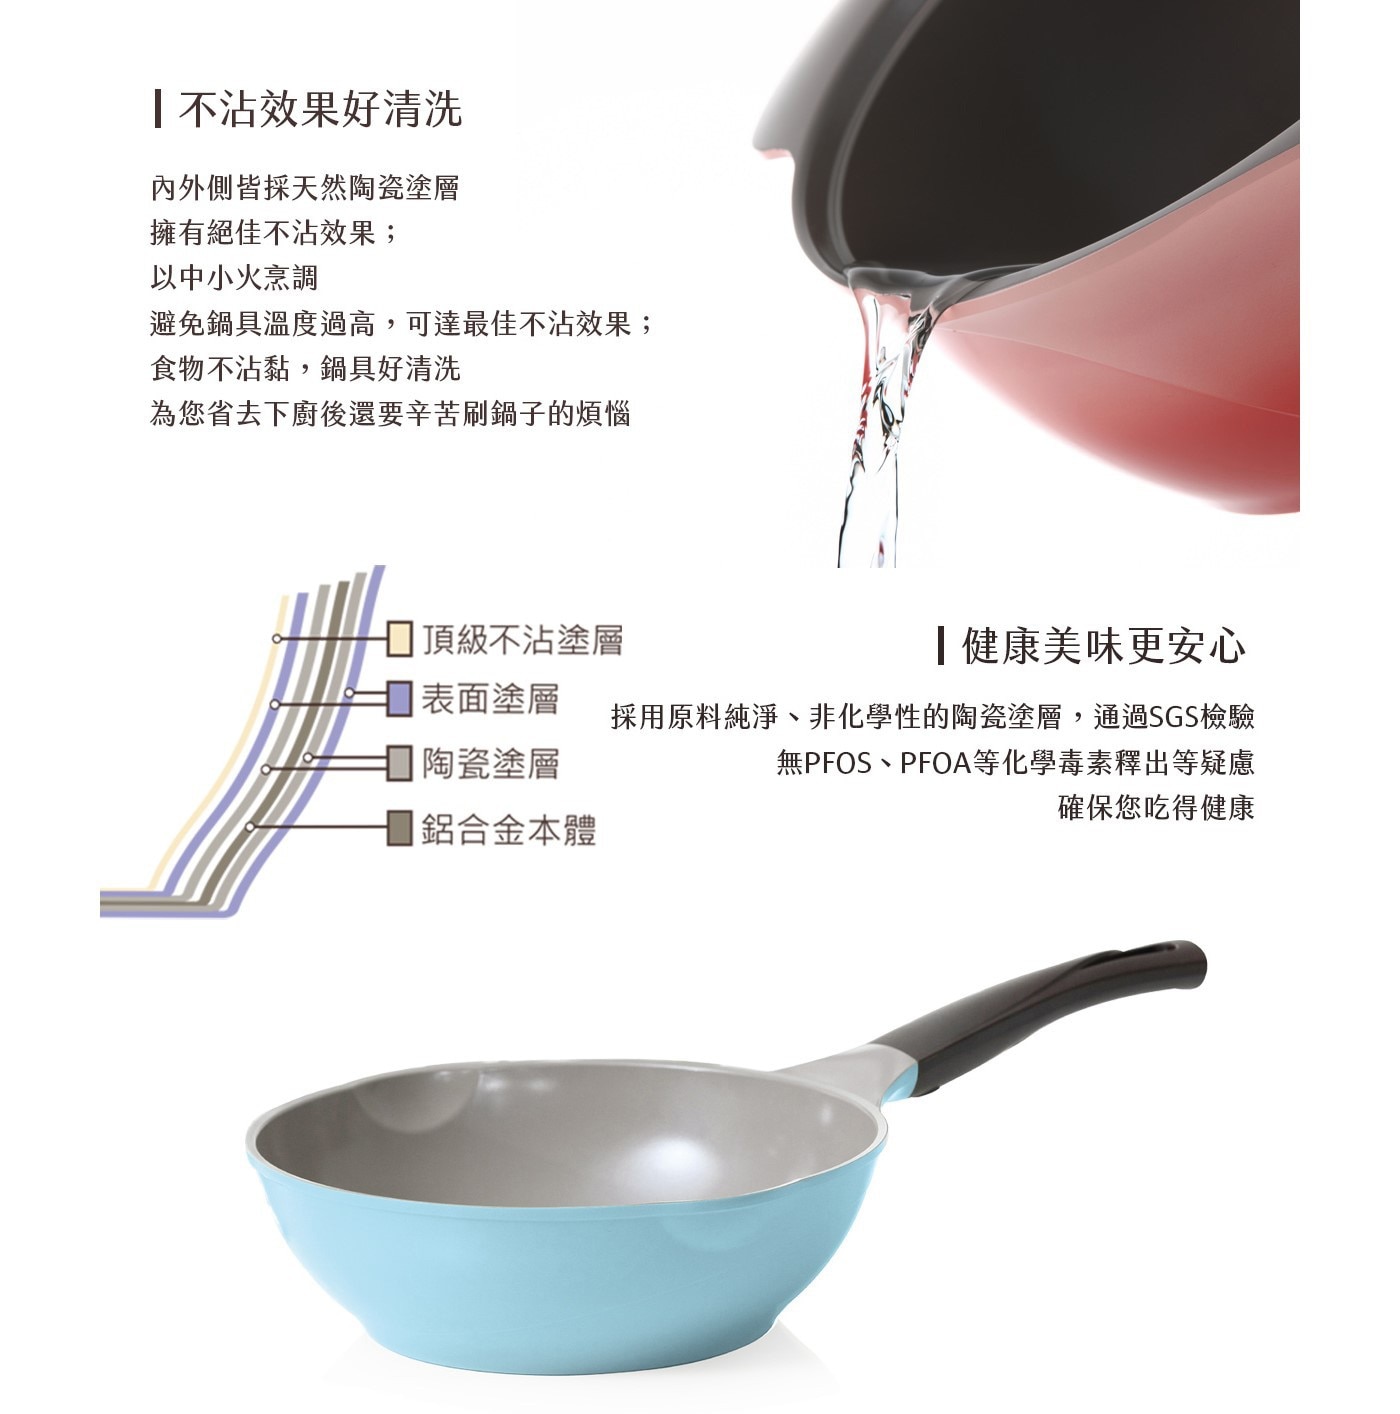 韓國Chef Topf 薔薇玫瑰系列26公分不沾炒鍋，頂級陶瓷塗層、絕佳不沾效果，不含PFOA、PFOS，內徑26cm，適合中小家庭使用。